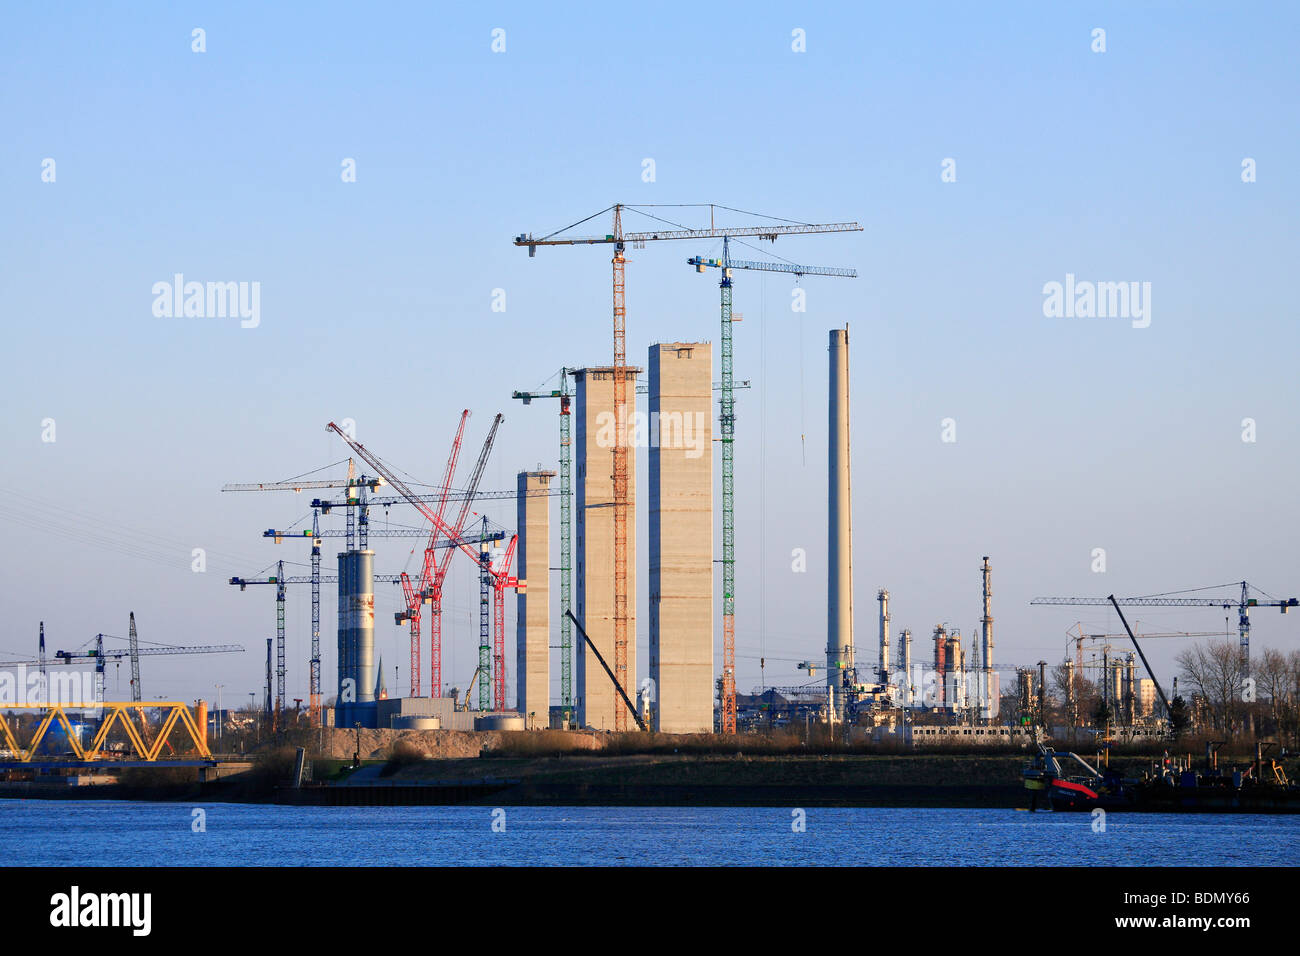 Site de construction, centrale de charbon Moorburg jusqu', ville hanséatique de ville hanséatique de Hambourg, Allemagne, Europe Banque D'Images